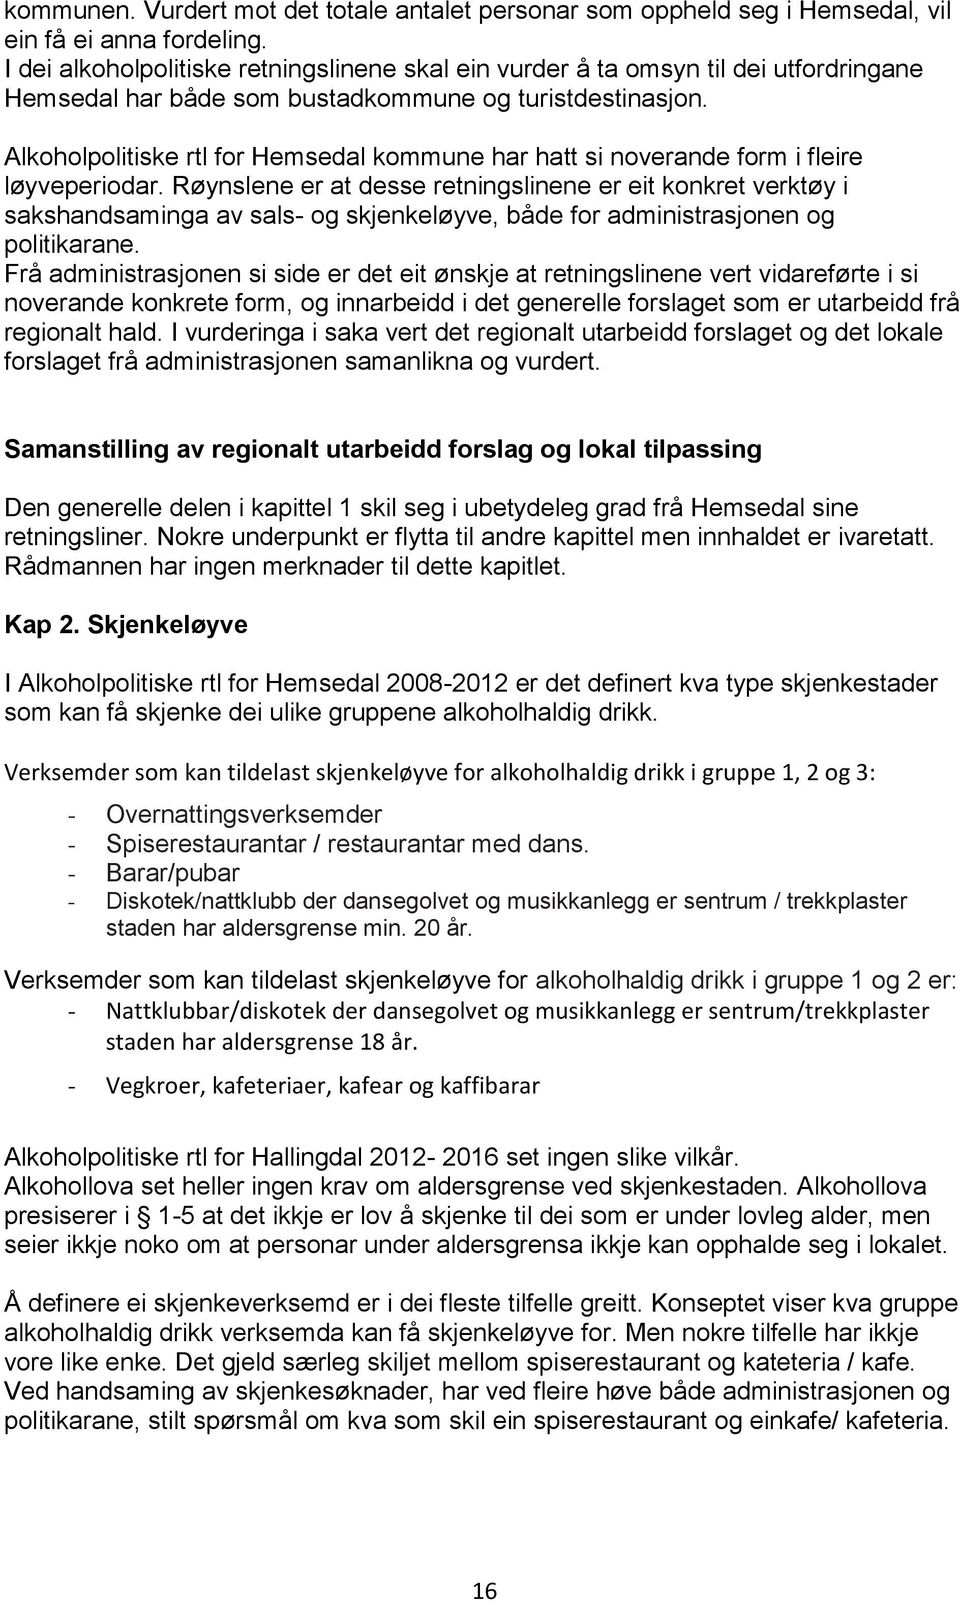 Alkoholpolitiske rtl for Hemsedal kommune har hatt si noverande form i fleire løyveperiodar.